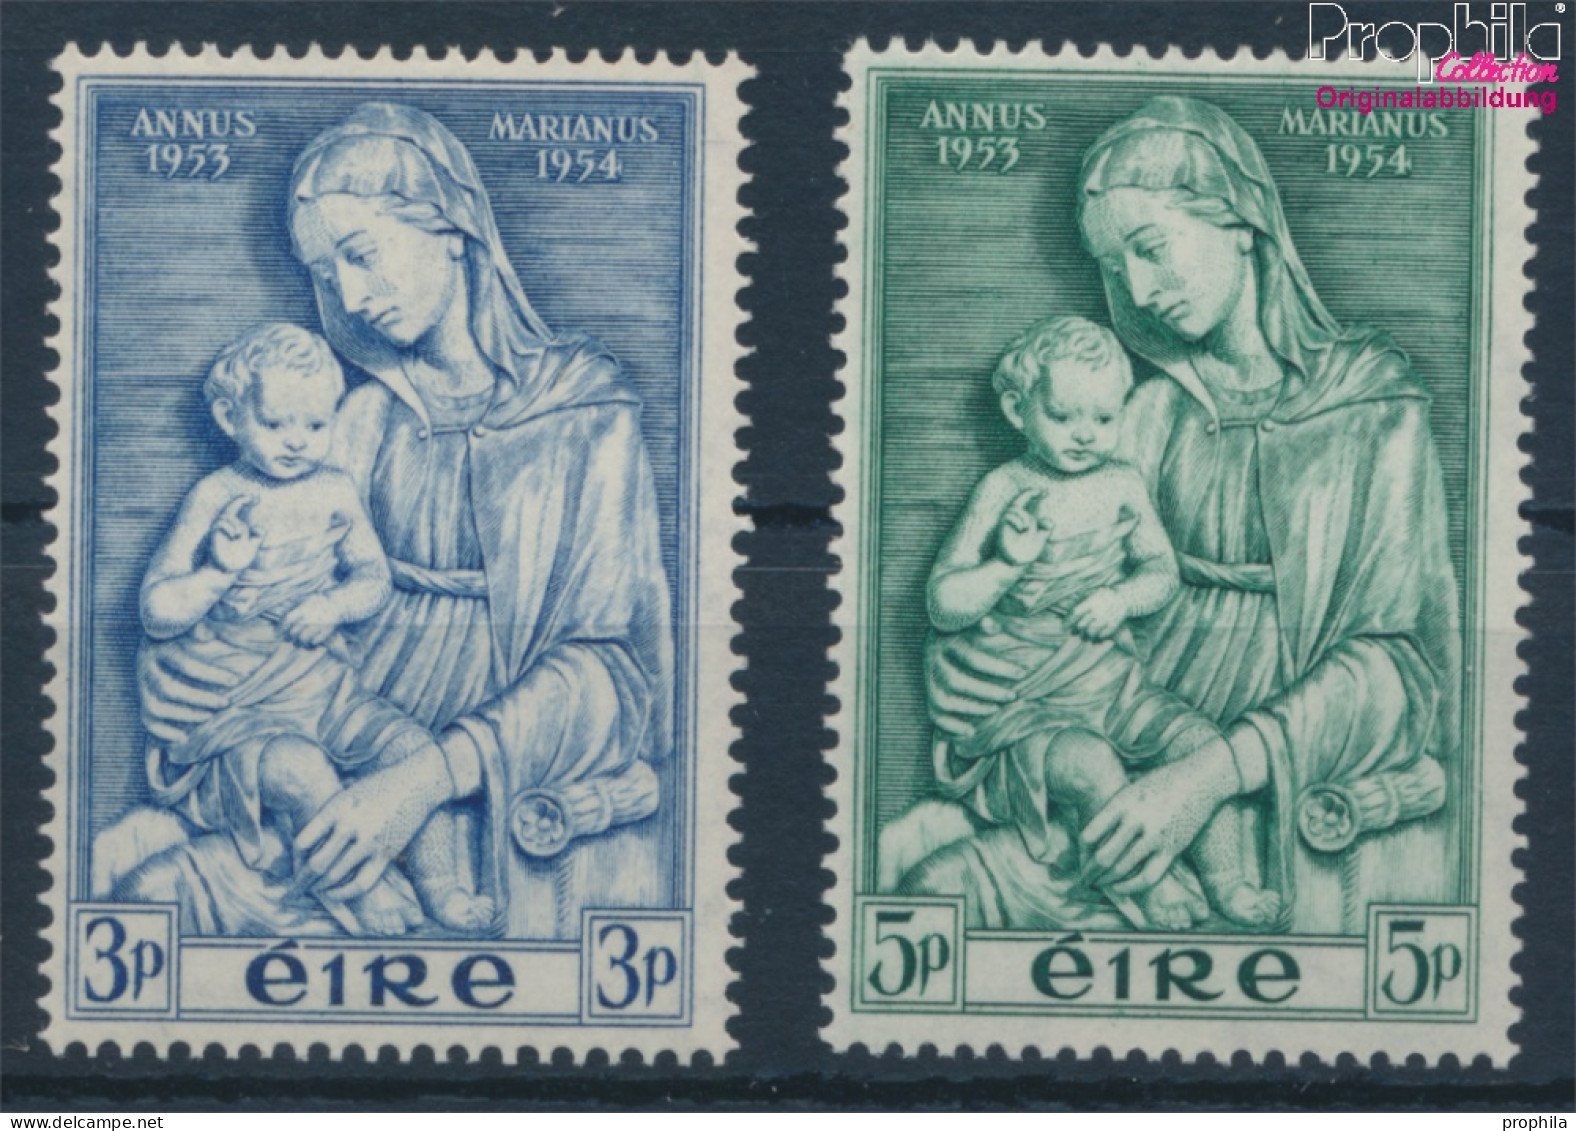 Irland 120-121 (kompl.Ausg.) Postfrisch 1954 Marianisches Jahr (10398343 - Nuovi